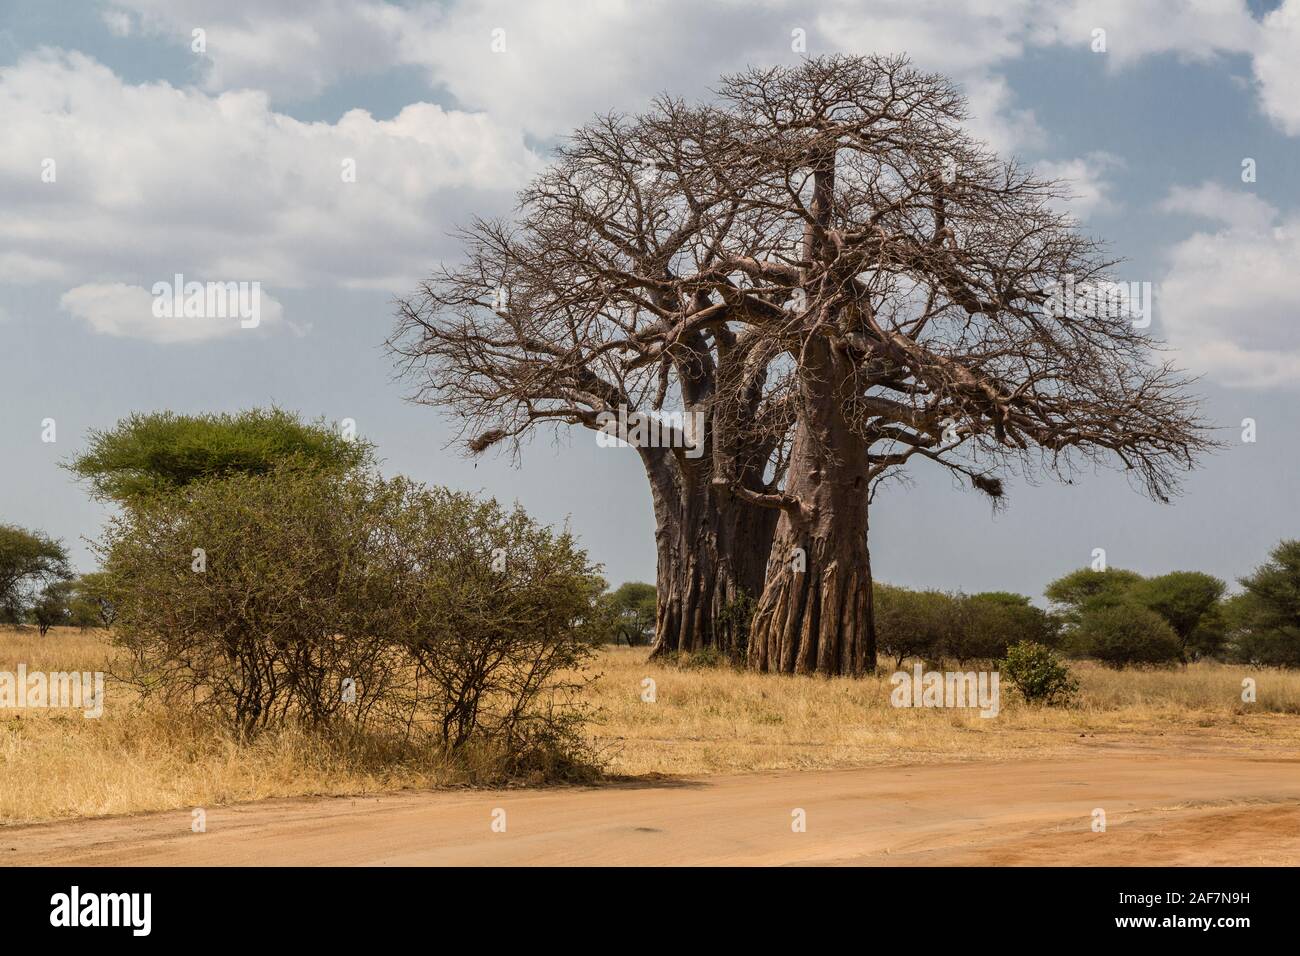 La República Unida de Tanzanía. Parque Nacional Tarangire, baobab (Adansonia digitata). Foto de stock